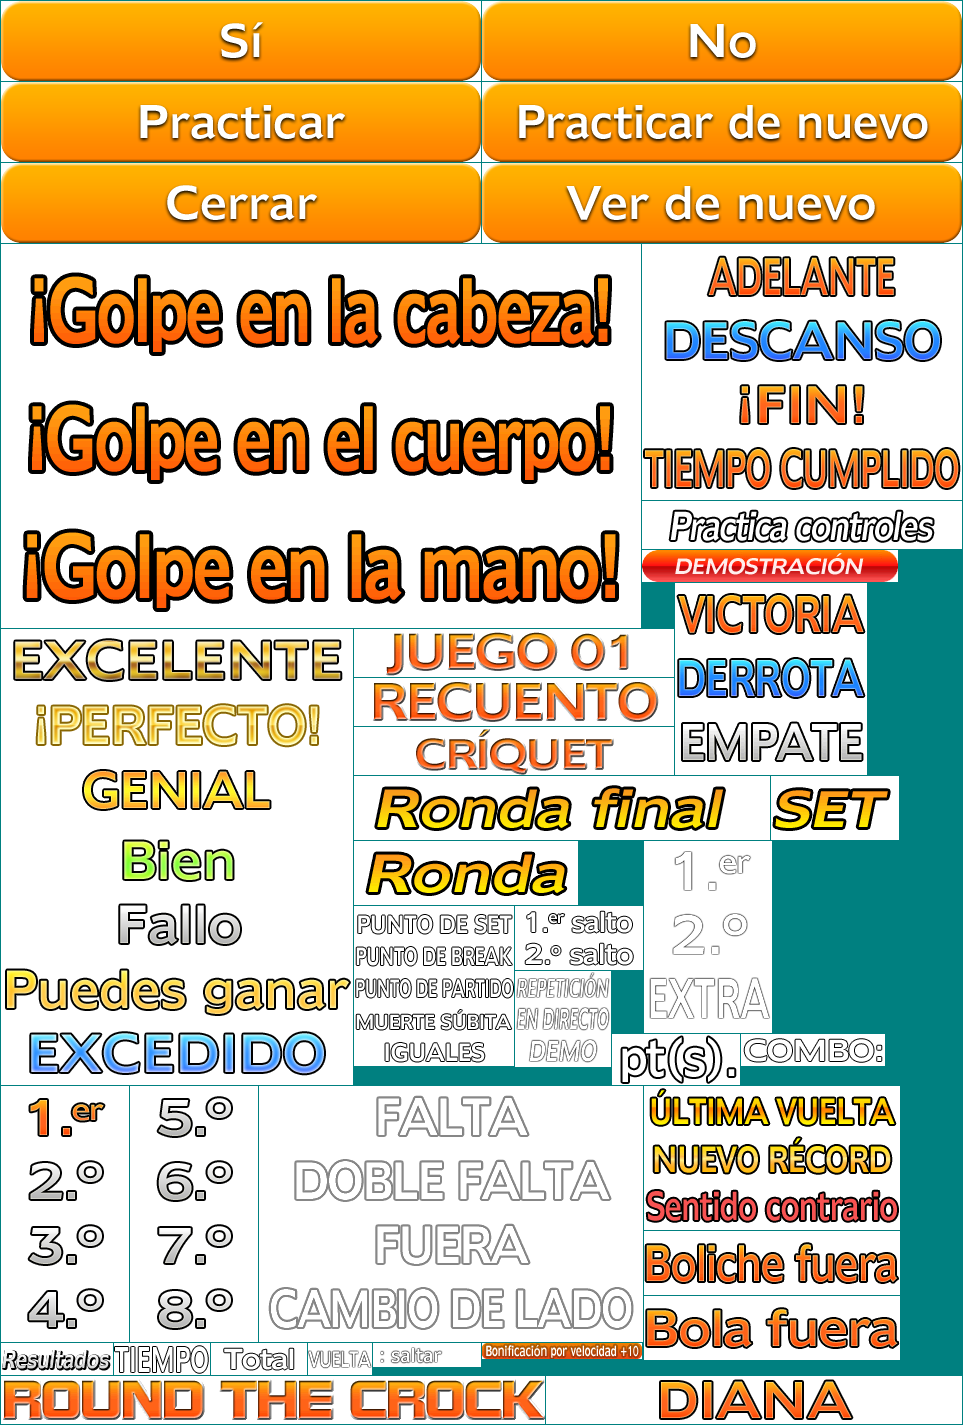 Deca Sports 2 / Sports Island 2 - Text (Spanish)